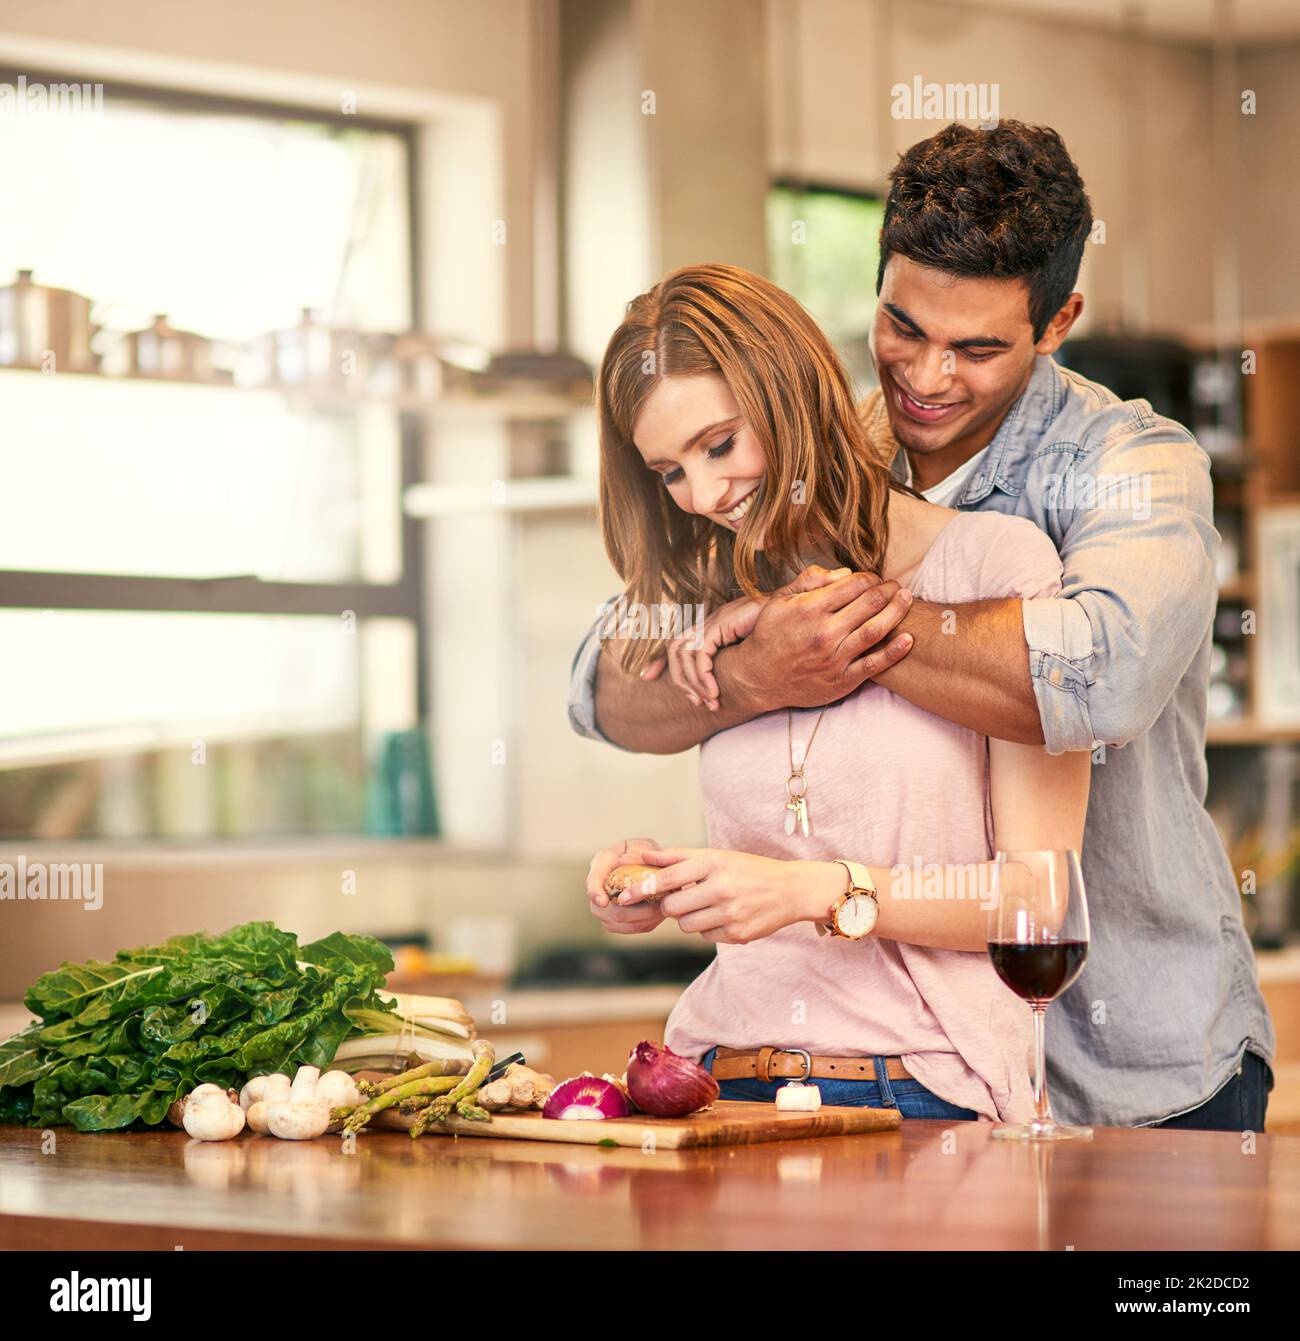 La nourriture est amour pour votre estomac. Photo d'un jeune homme qui embrasse sa femme pendant qu'elle prépare le dîner. Banque D'Images